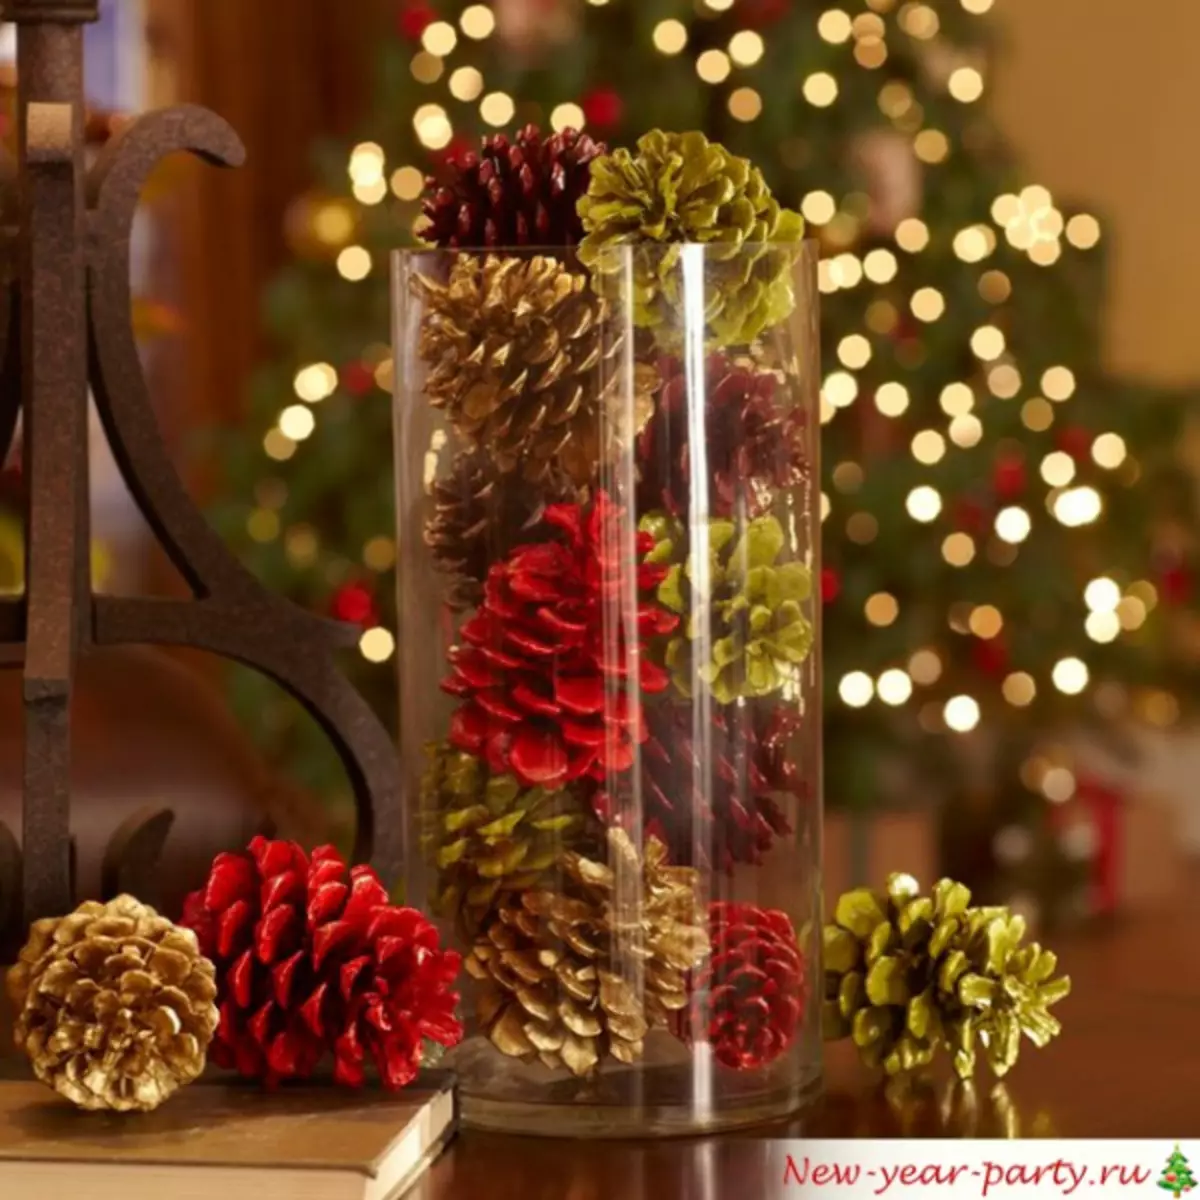 زخارف السنة الجديدة بيديك في شجرة عيد الميلاد وعلى زجاجة مع صورة